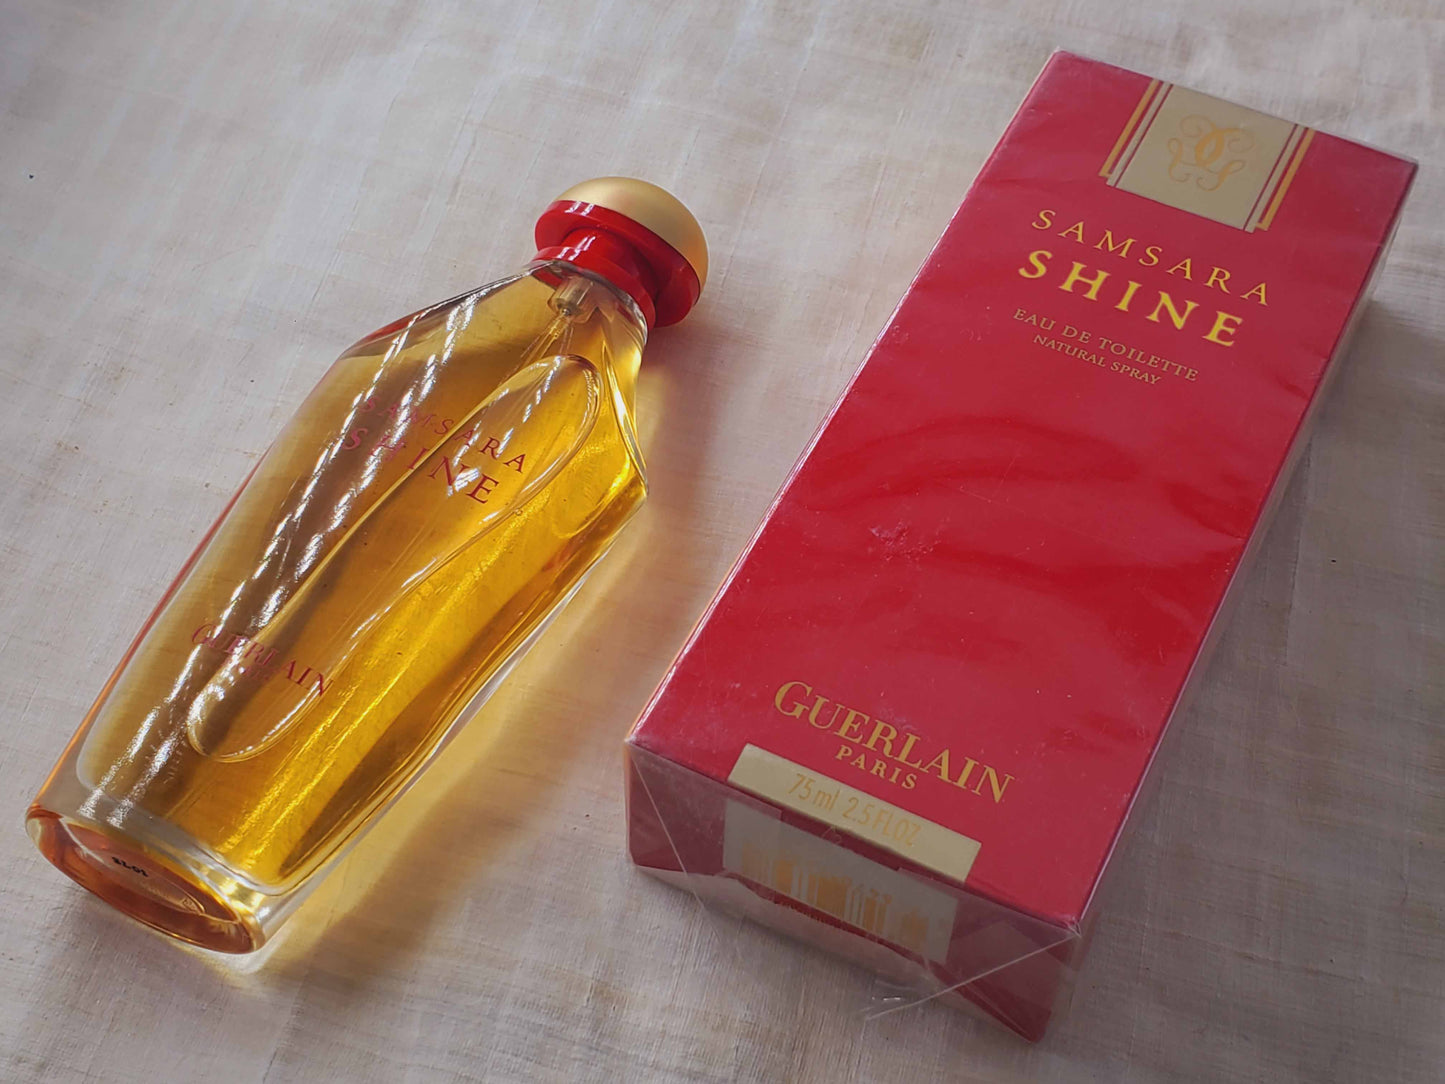 Samsara Shine Guerlain for women EDT Spray 75 ml 2.5 oz, Rare, Vintage